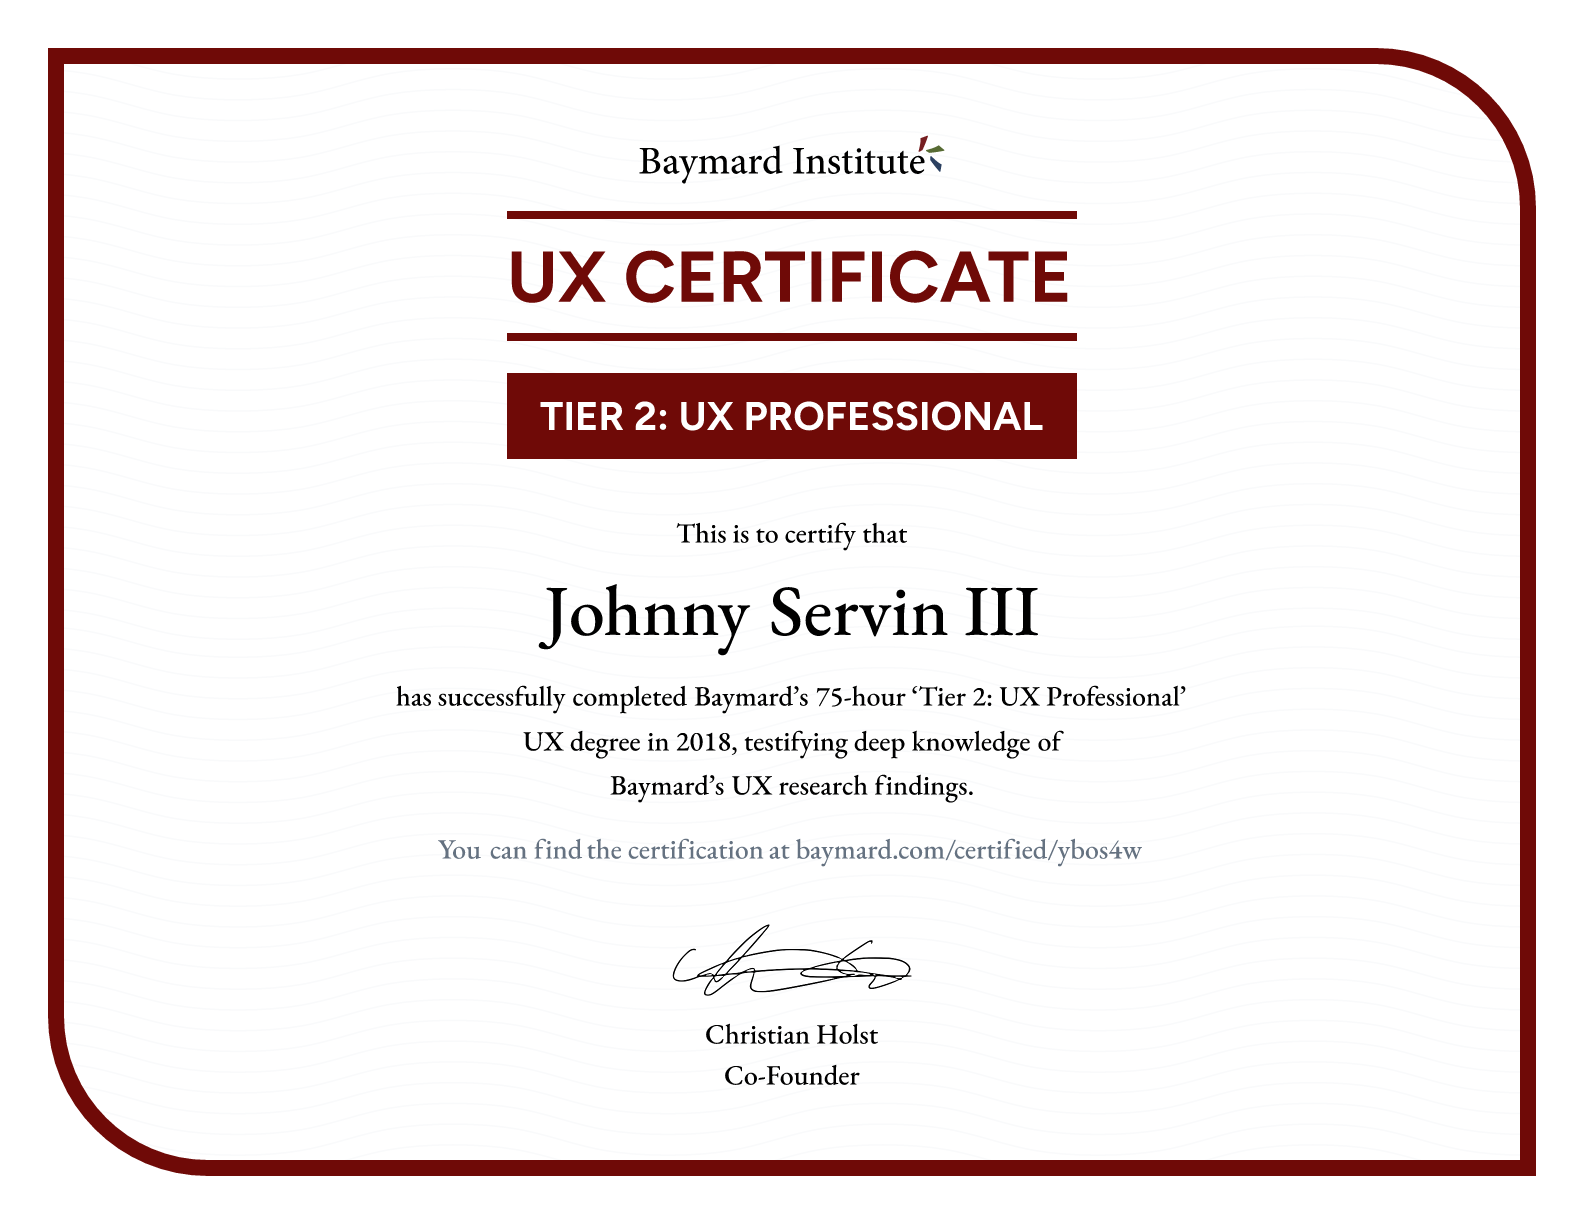 Johnny Servin III’s certificate